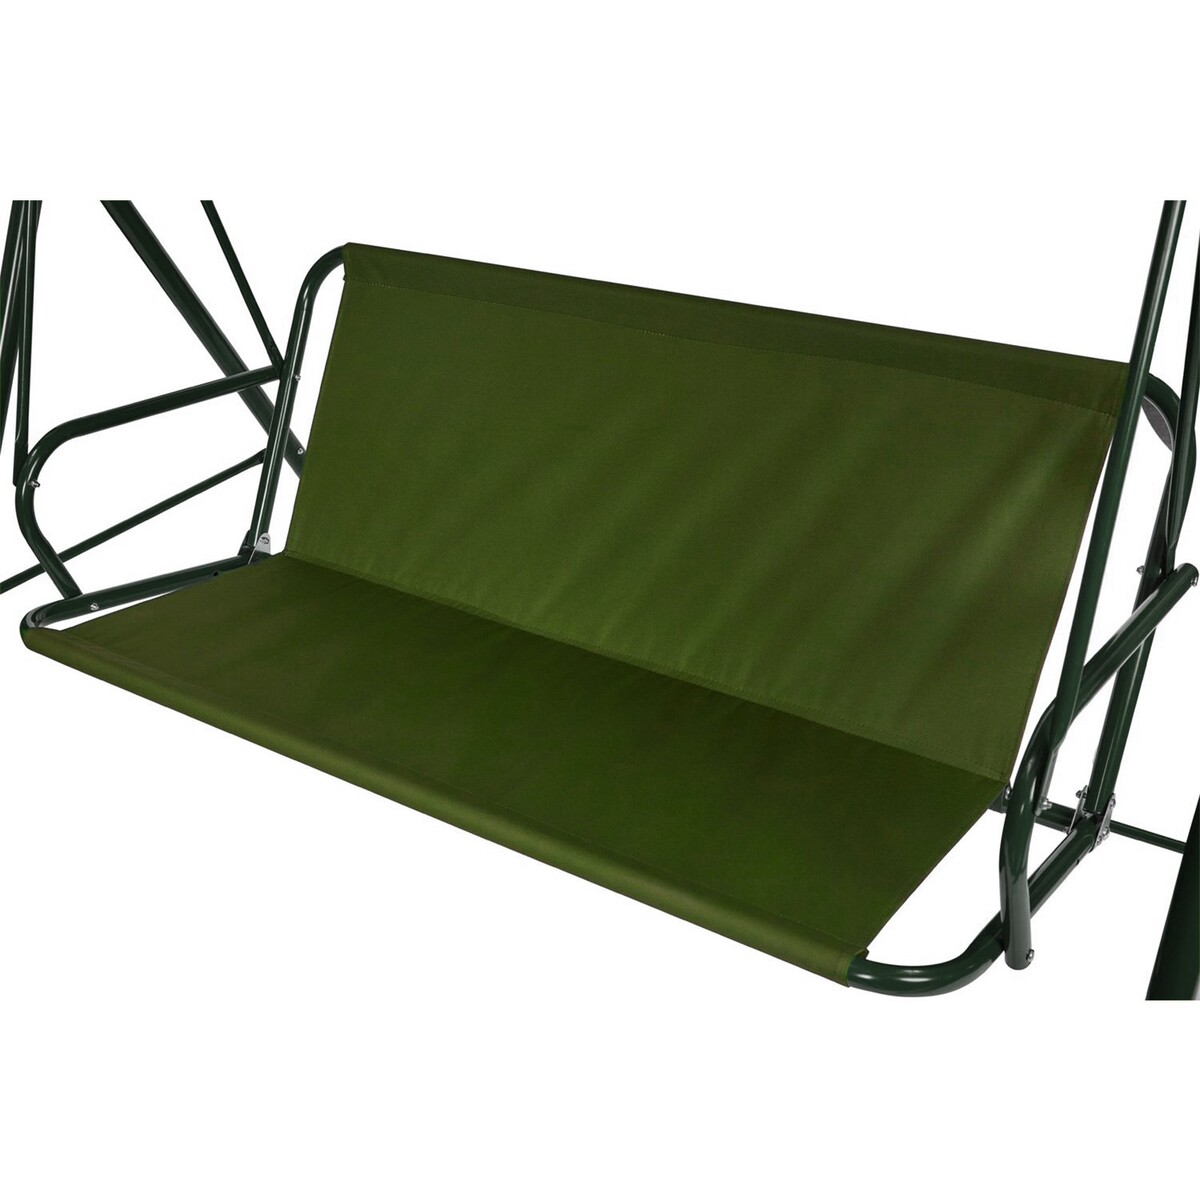 Усиленное тканевое сиденье для садовых качелей 150x50/50 см, оксфорд 600, олива No brand, цвет зеленый 02852689 - фото 1